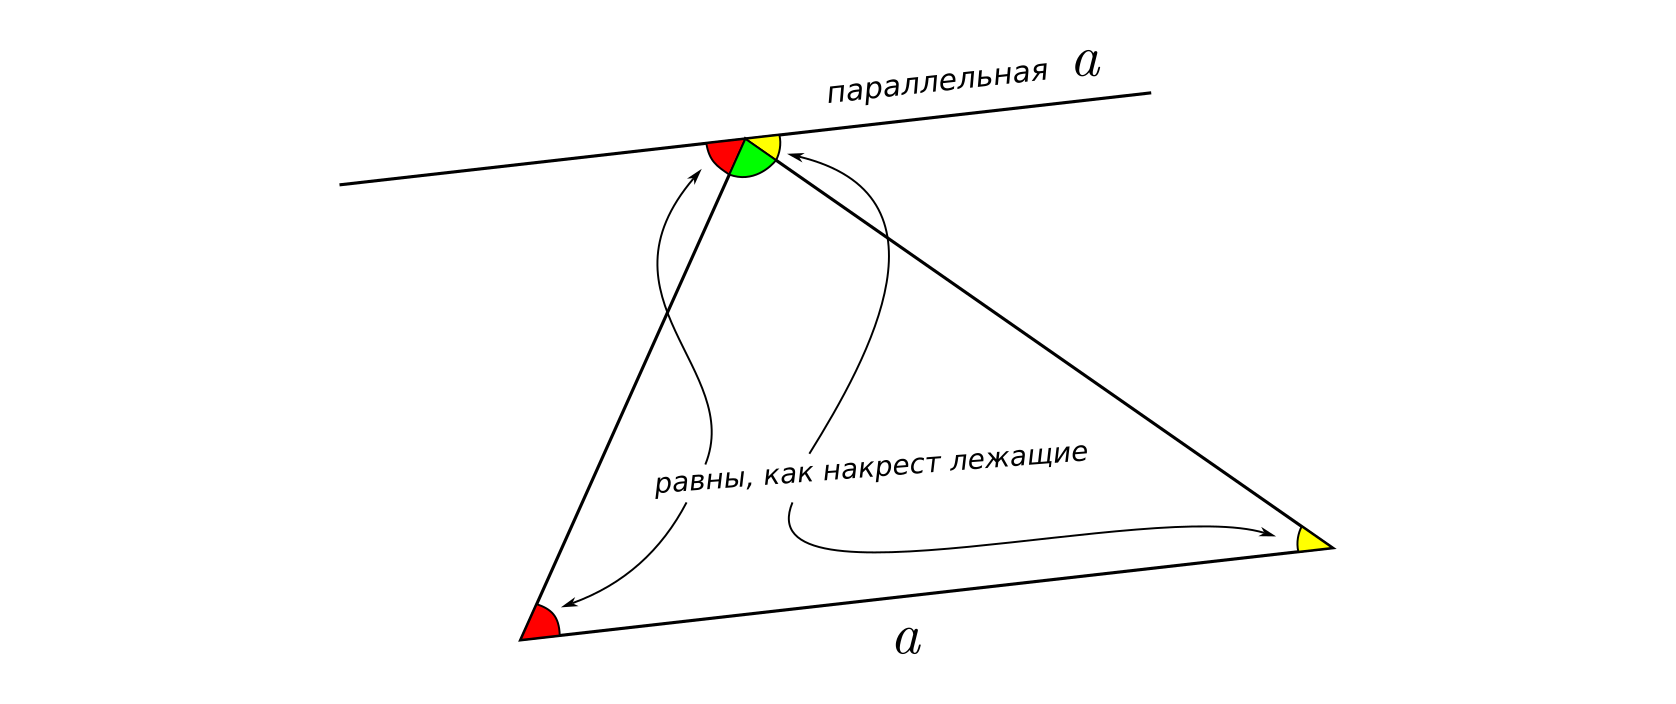 Сумма всех углов треугольника равна развëрнутому углу со сторонами, параллельными одной из сторон треугольника.